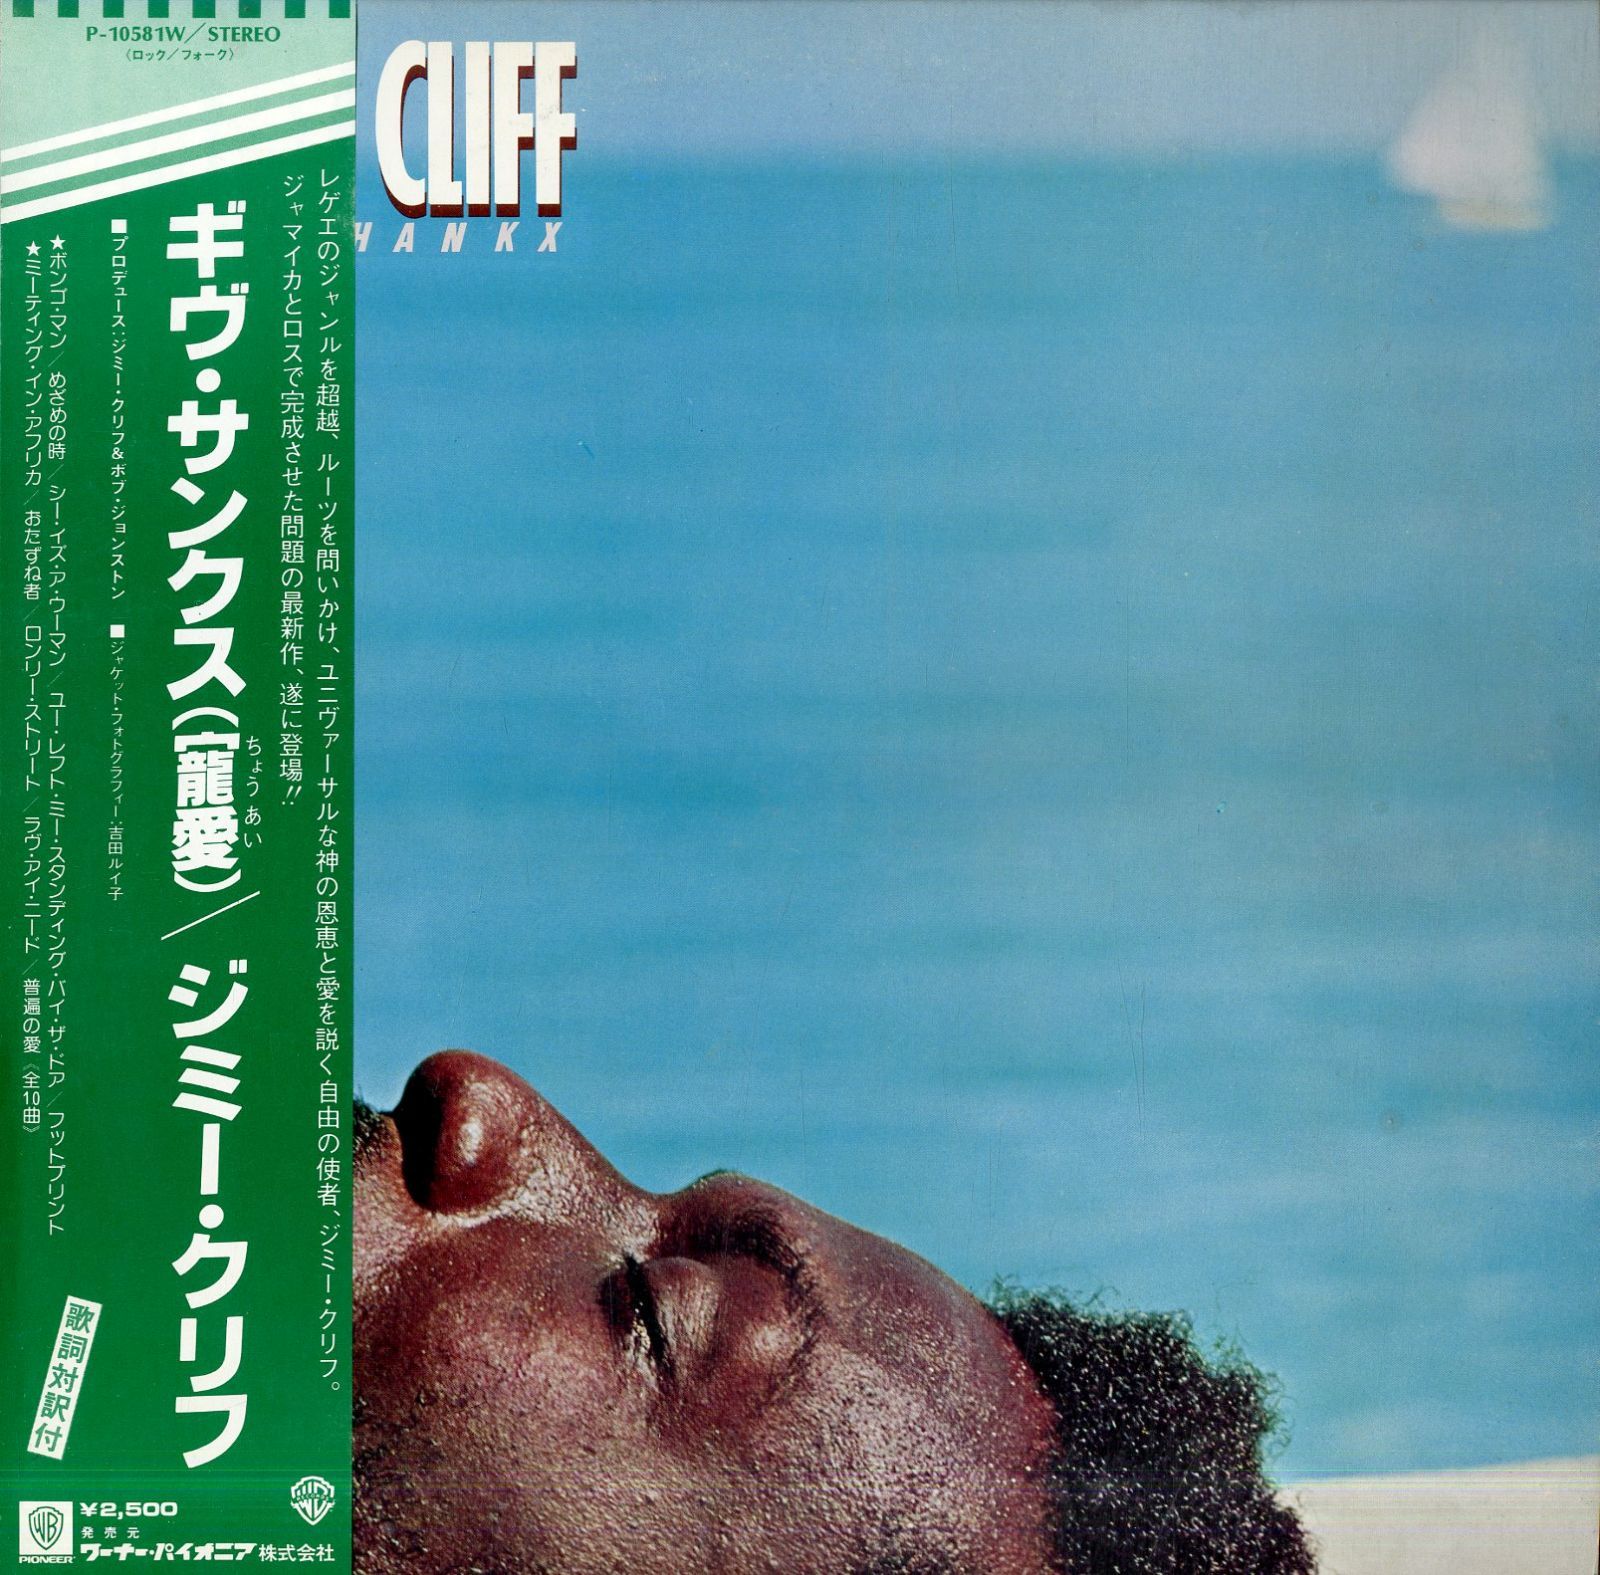 LP1枚 / ジミー・クリフ(JIMMY CLIFF) / Give Thankx / 寵愛  (1978年・P-10581W・ルーツレゲエ・REGGAE) / A00575779 - メルカリ